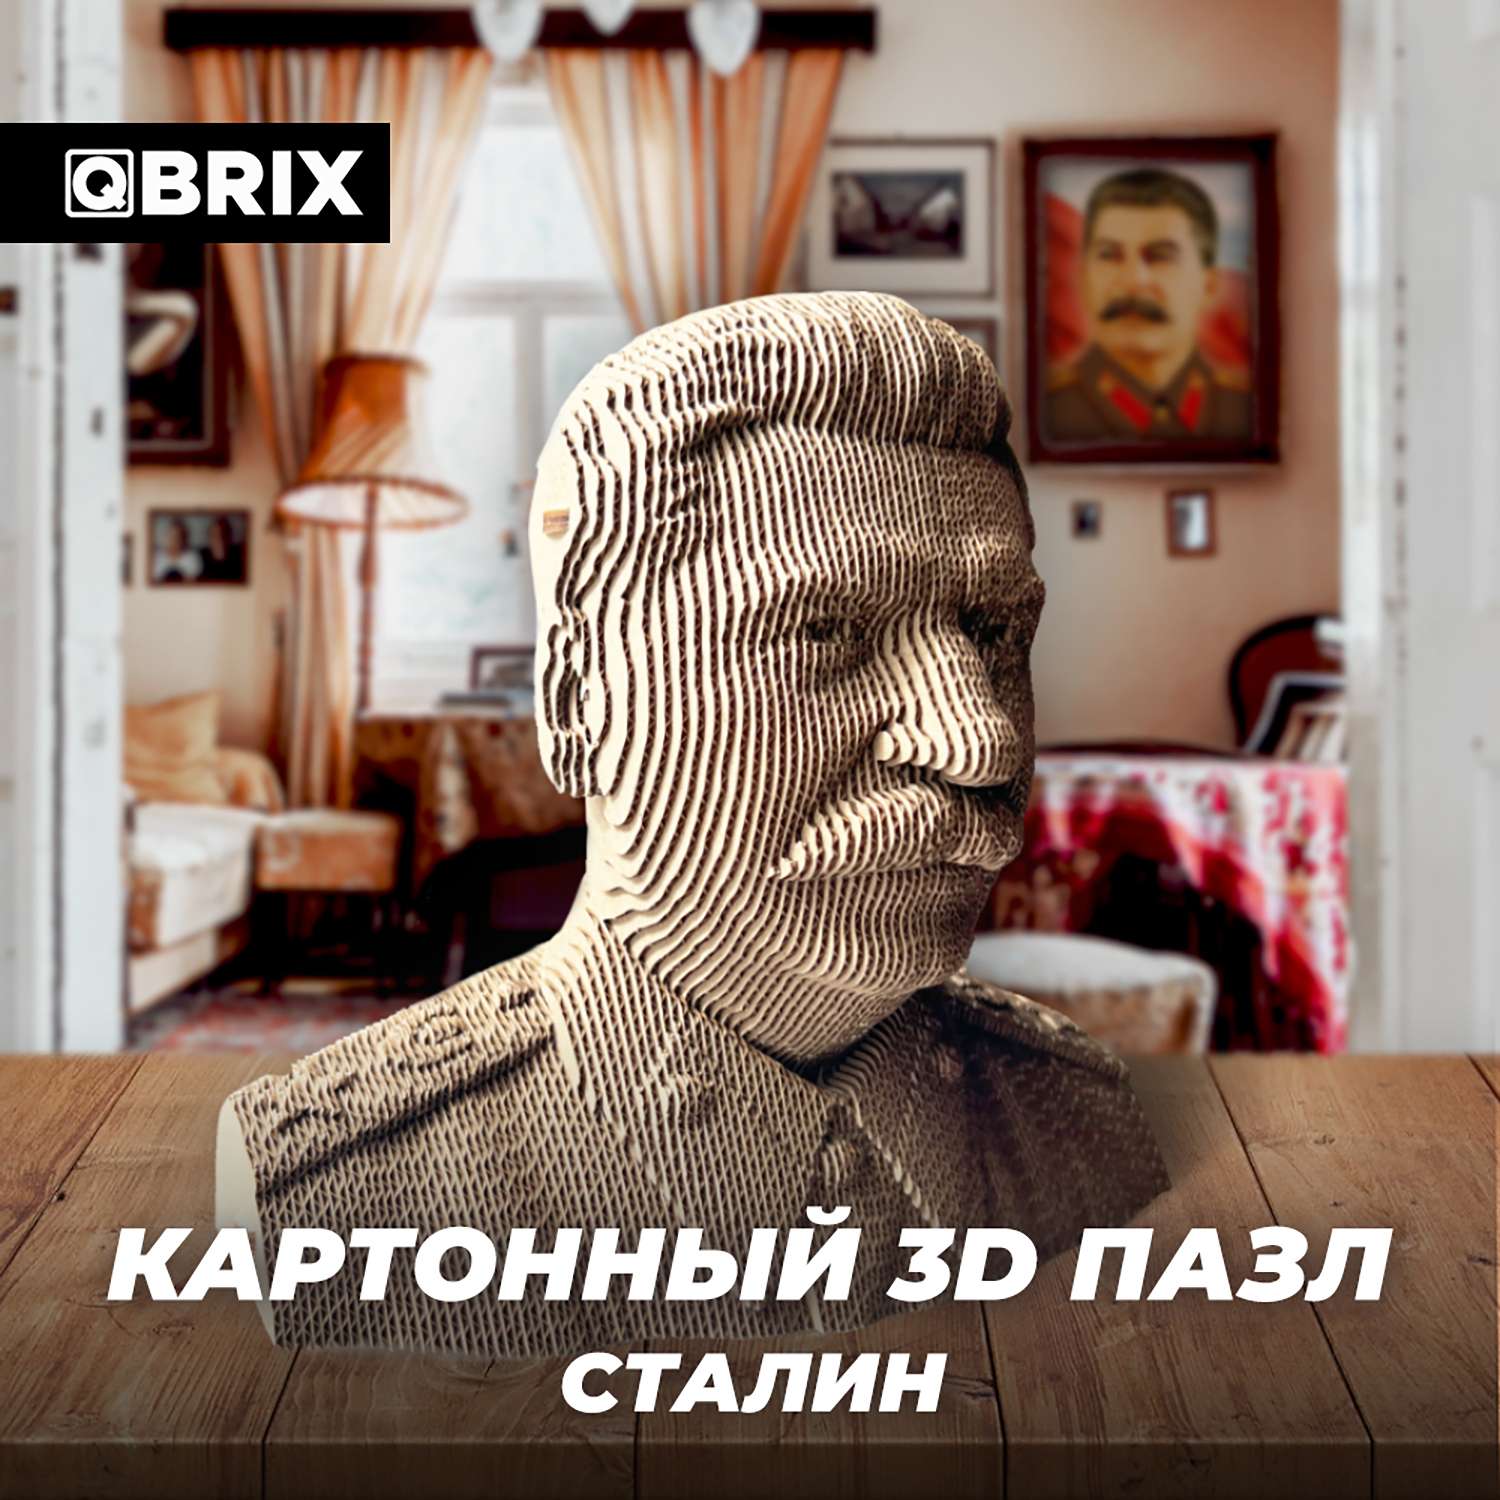 Конструктор QBRIX 3D картонный Сталин 20033 20033 - фото 6